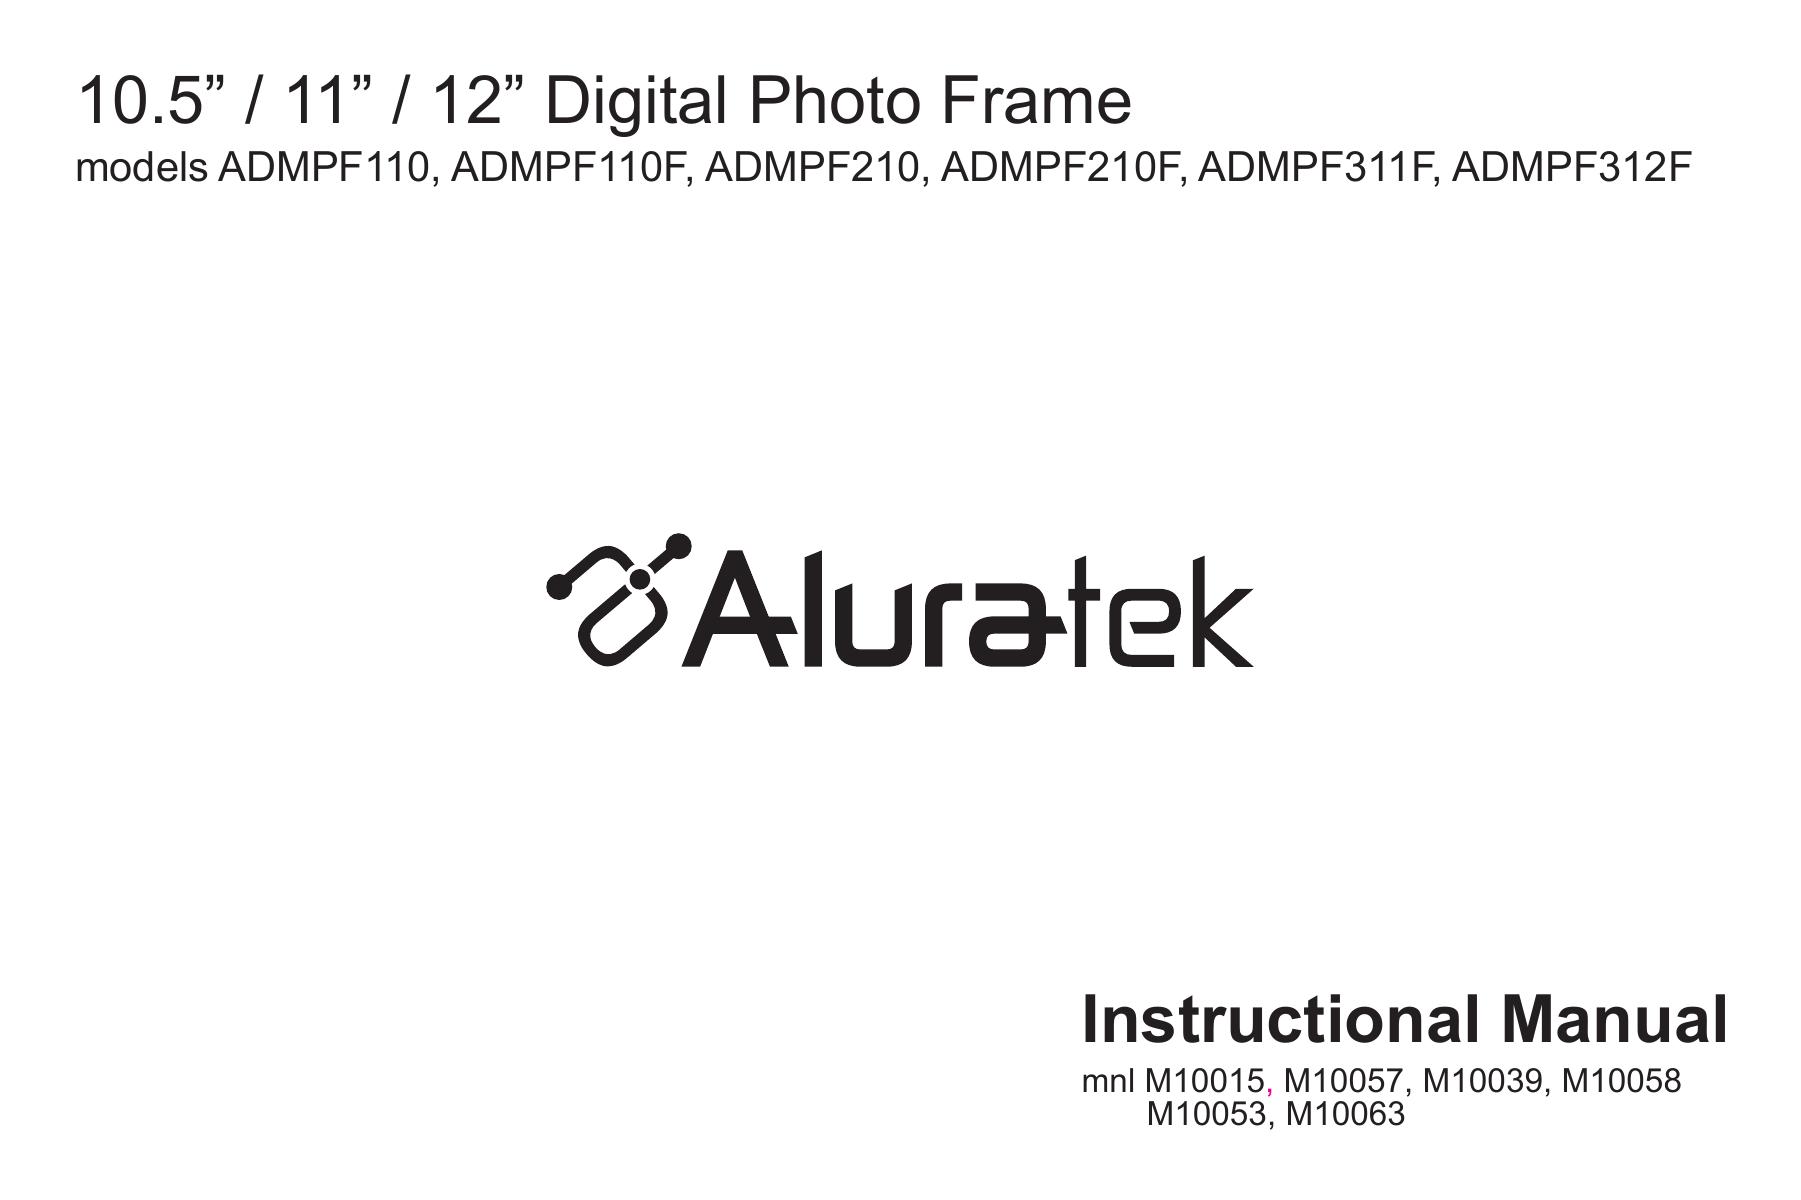 Aluratek M10053 Digital Photo Frame User Manual